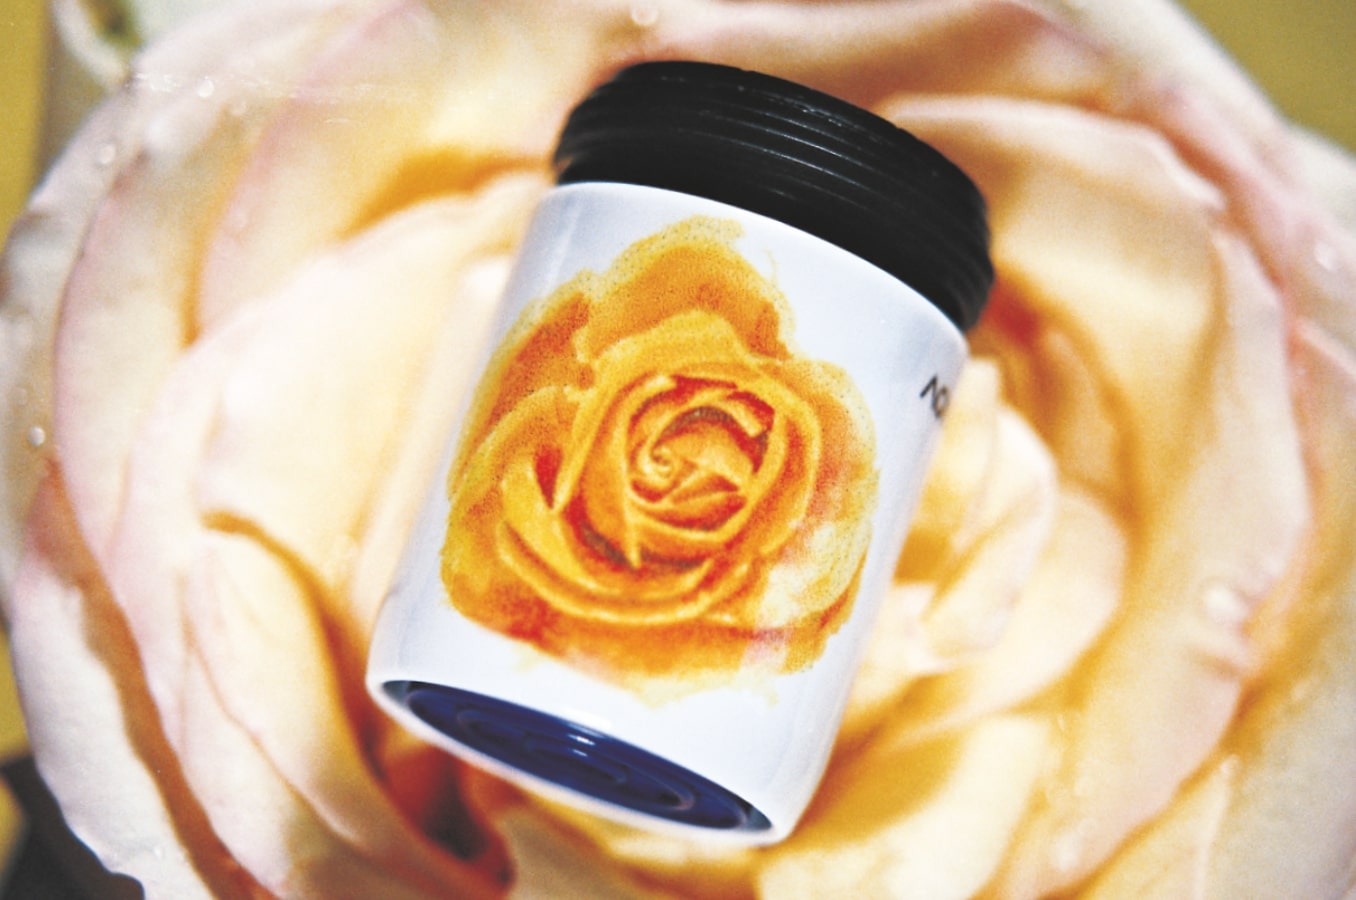 AquaClic-Perlstrahlregler für den Hahn mit  Rose rose-Design: Senken Sie den Wasserverbrauch und sparen Sie Energie!